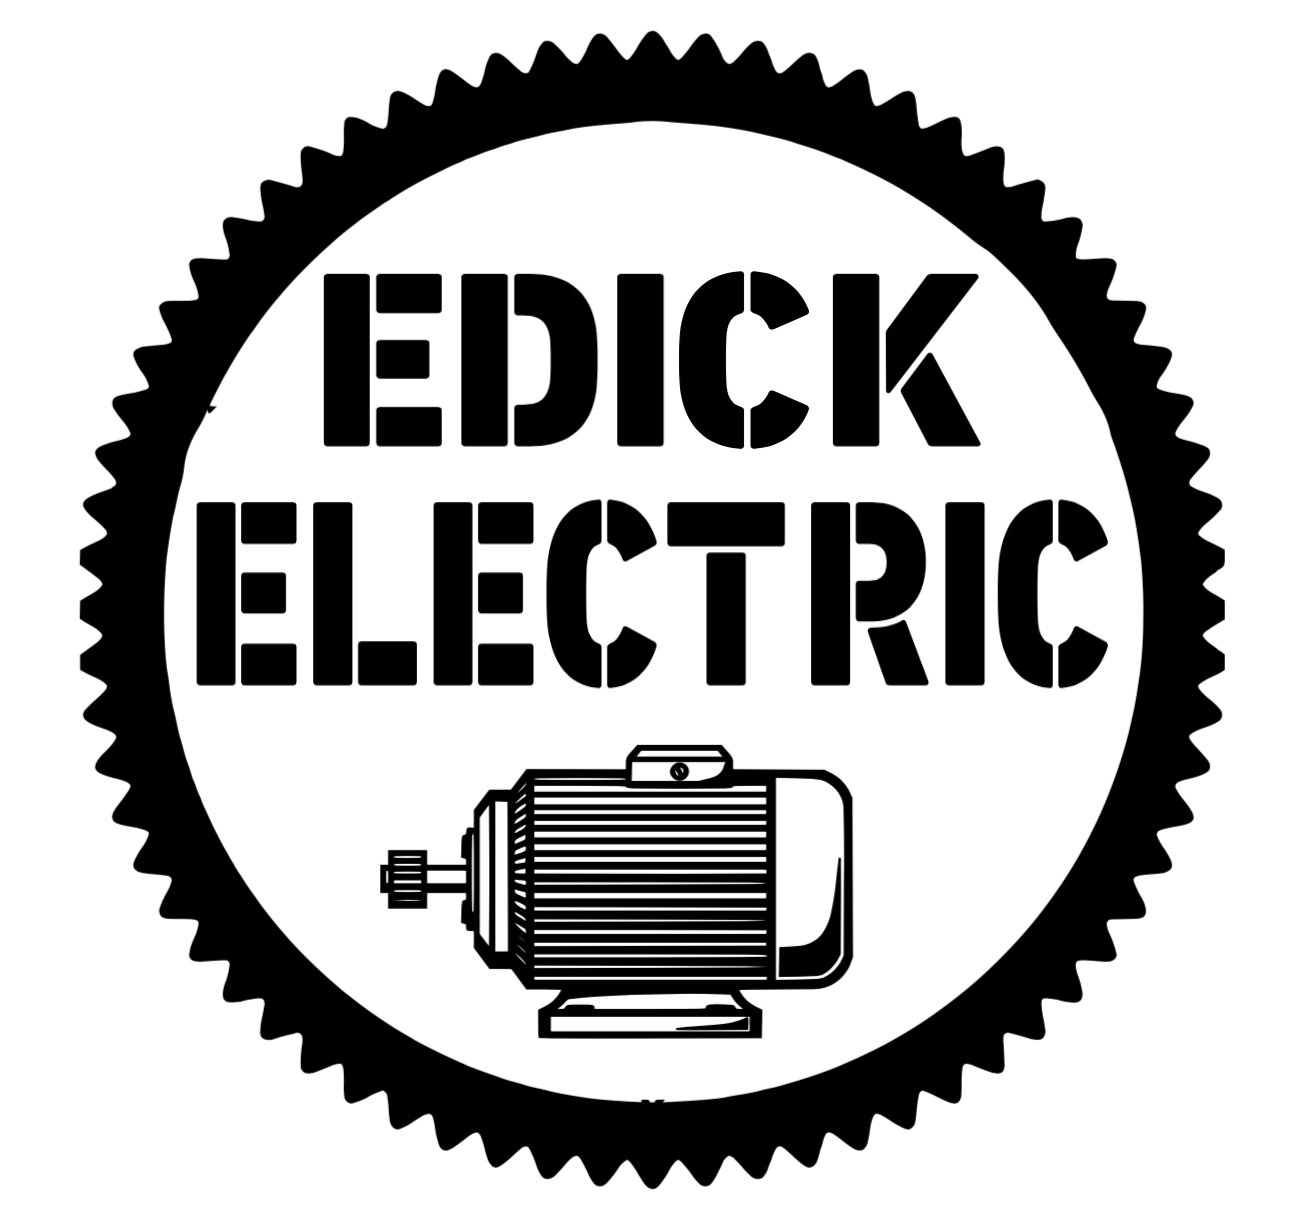 Edick Electric Motors